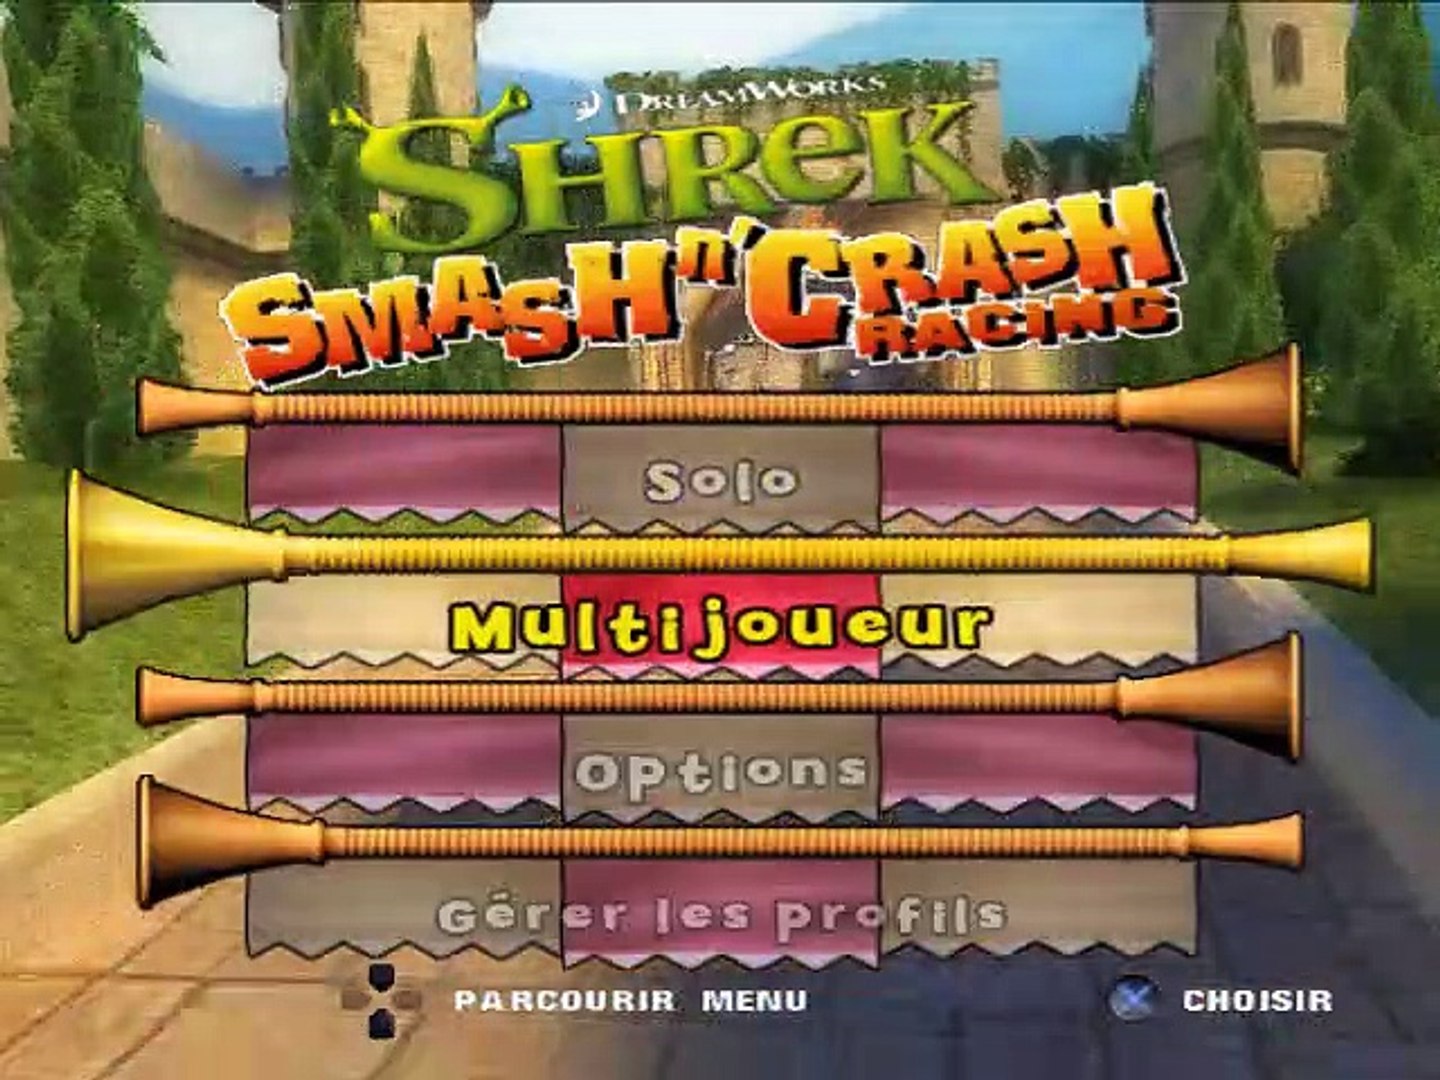 Shrek Smash N Crash - Gamecube 